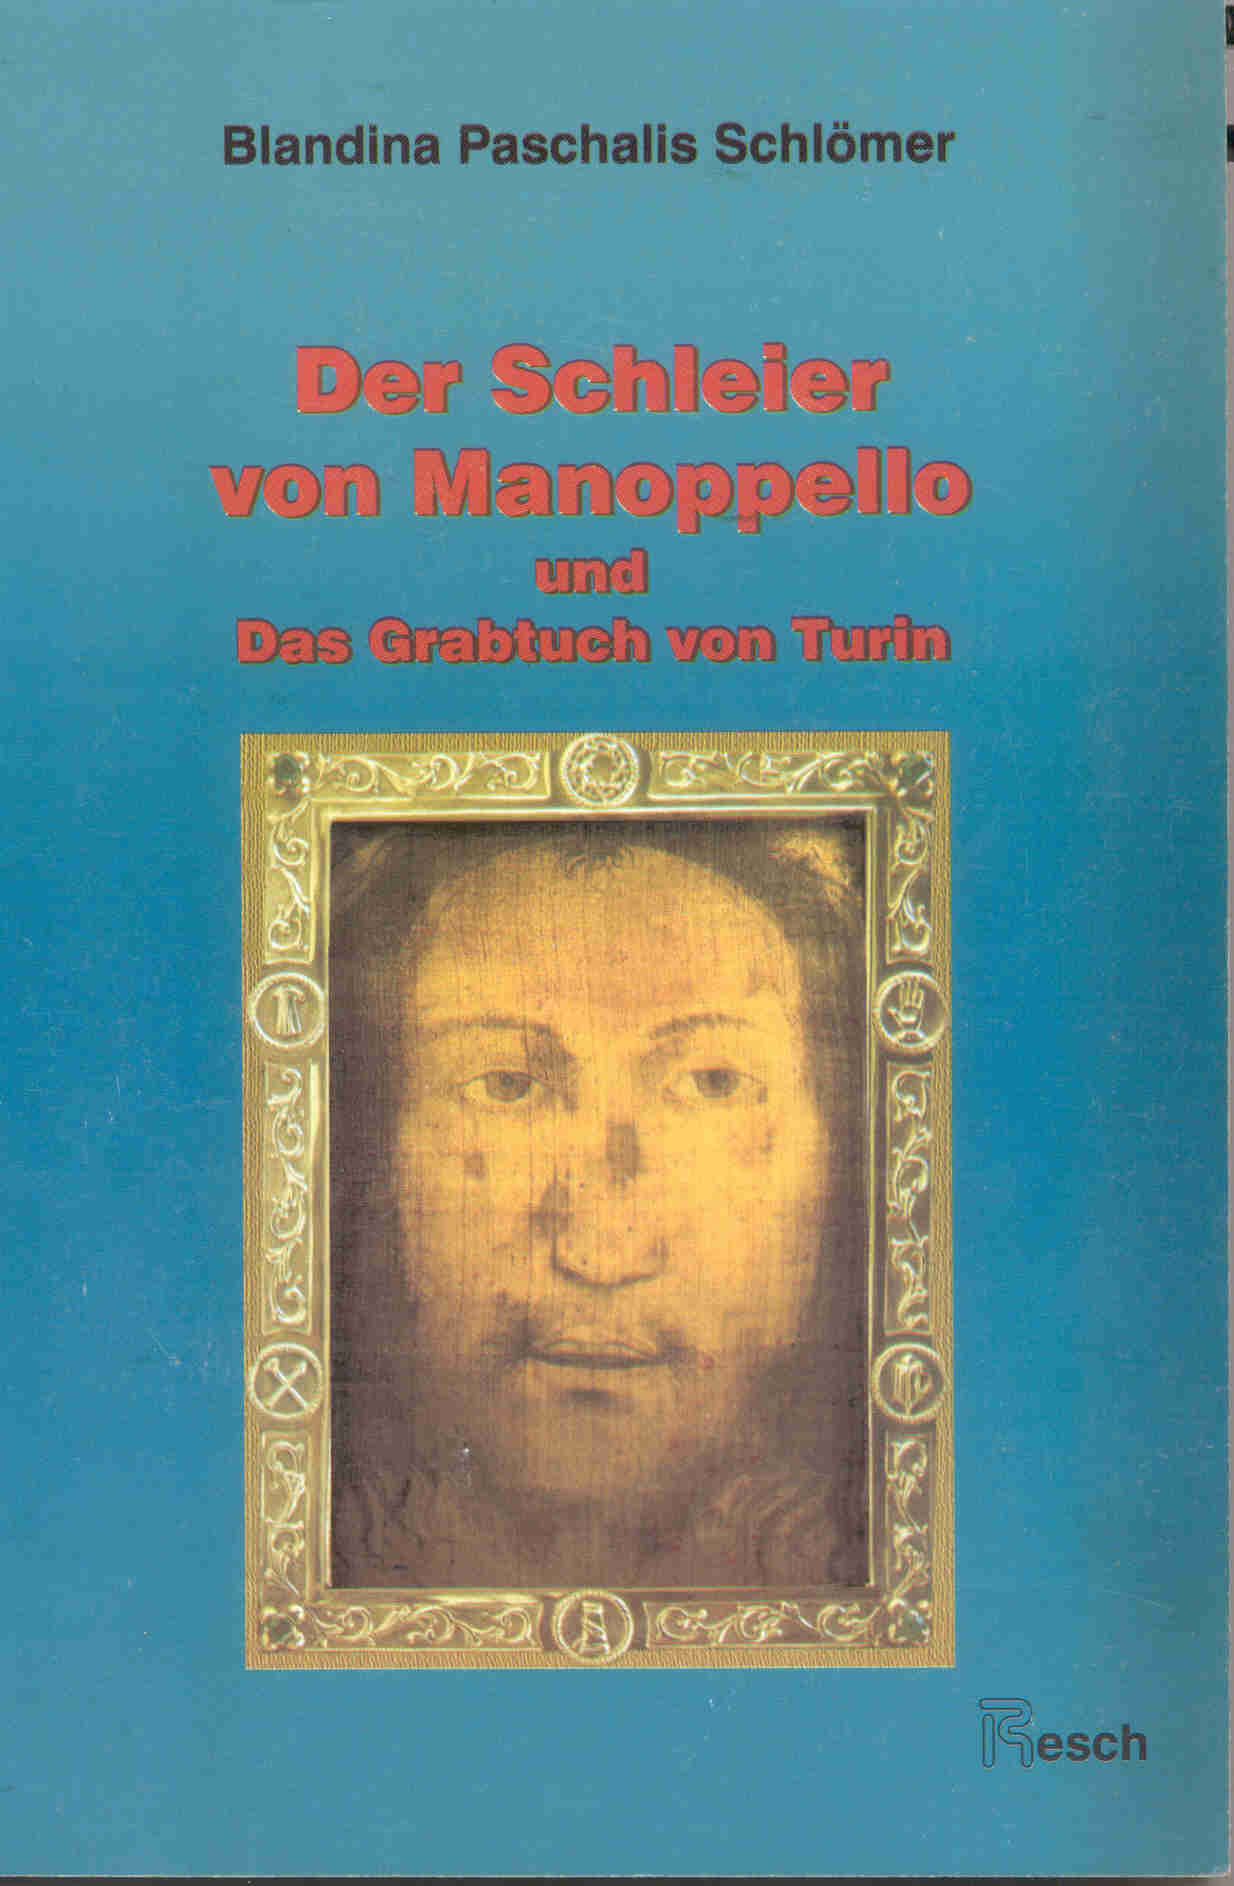 Schloemer_Buch_book_Vorderseite_front_page